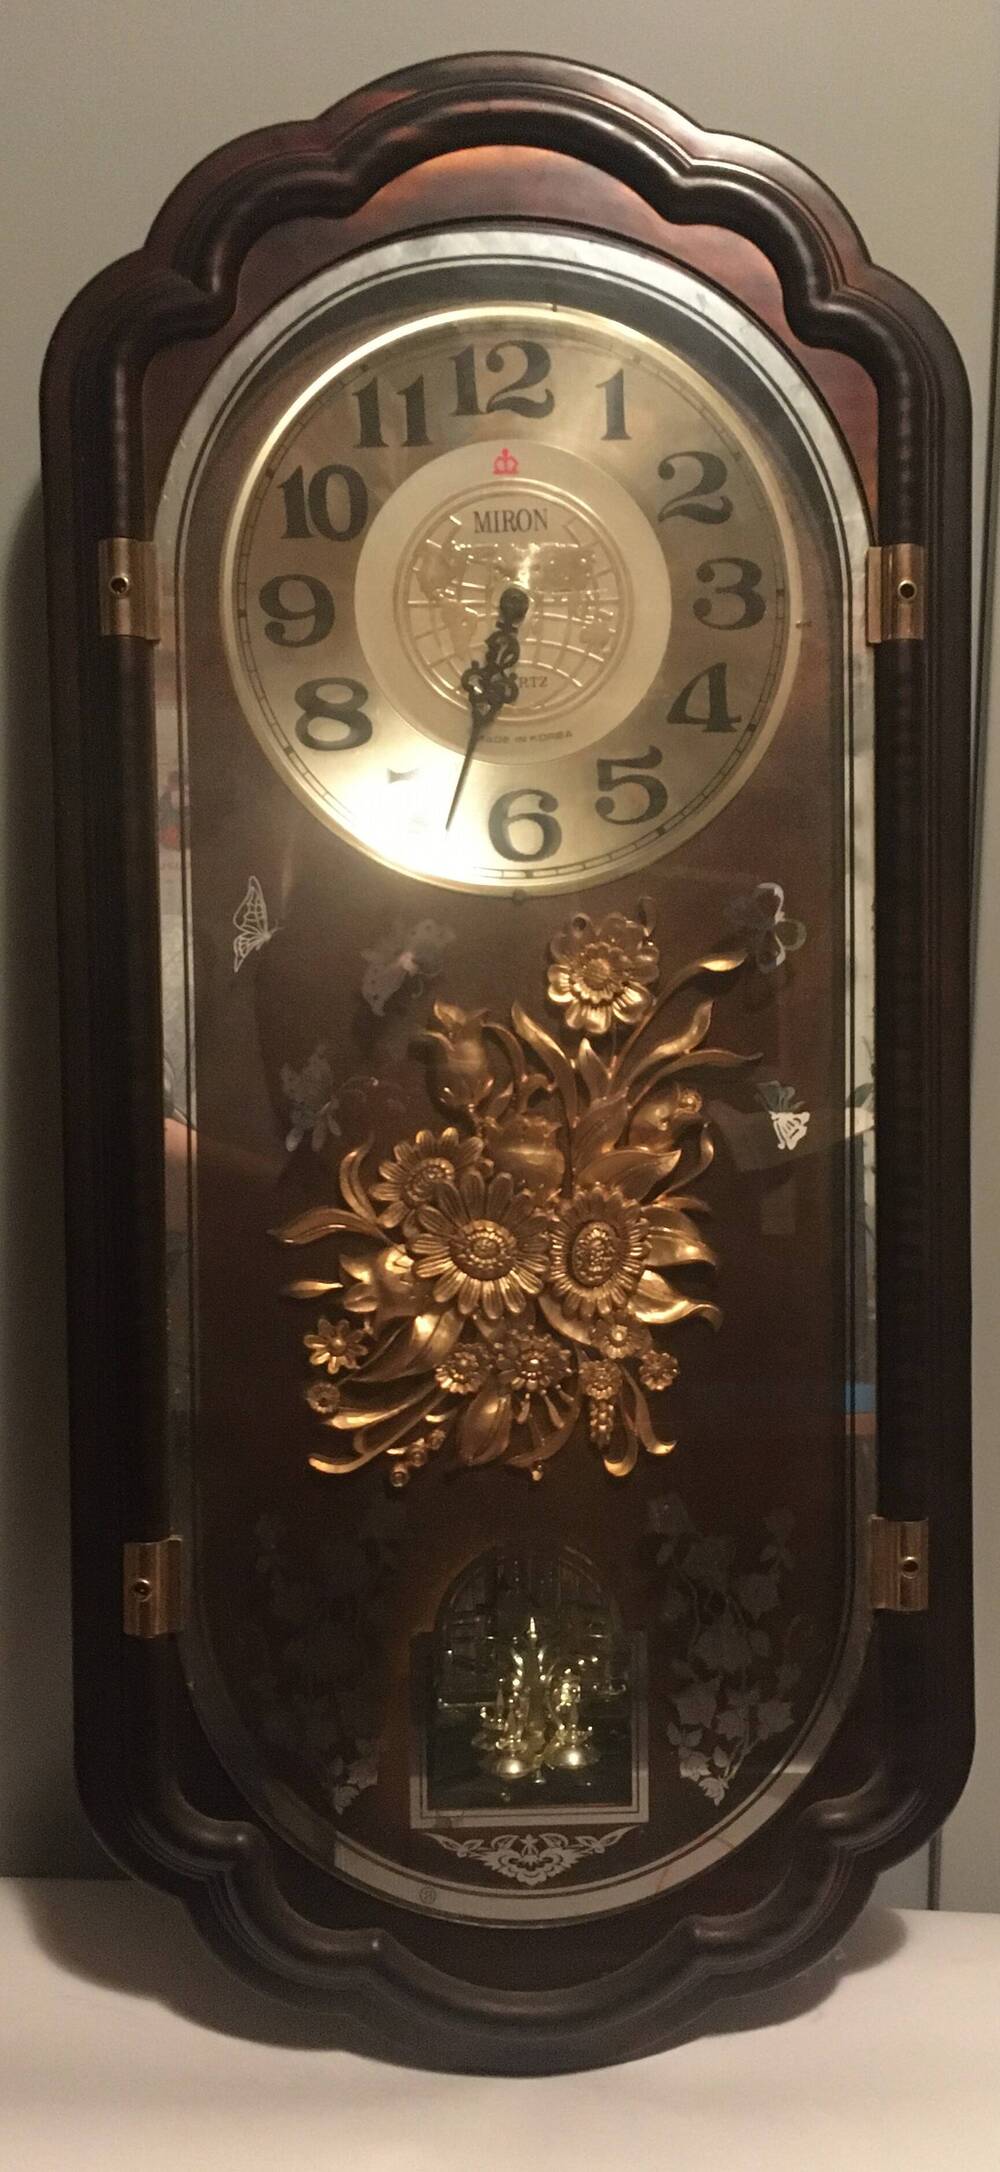 Часы марки Miron, настенные с вертушкой, 1995 г.